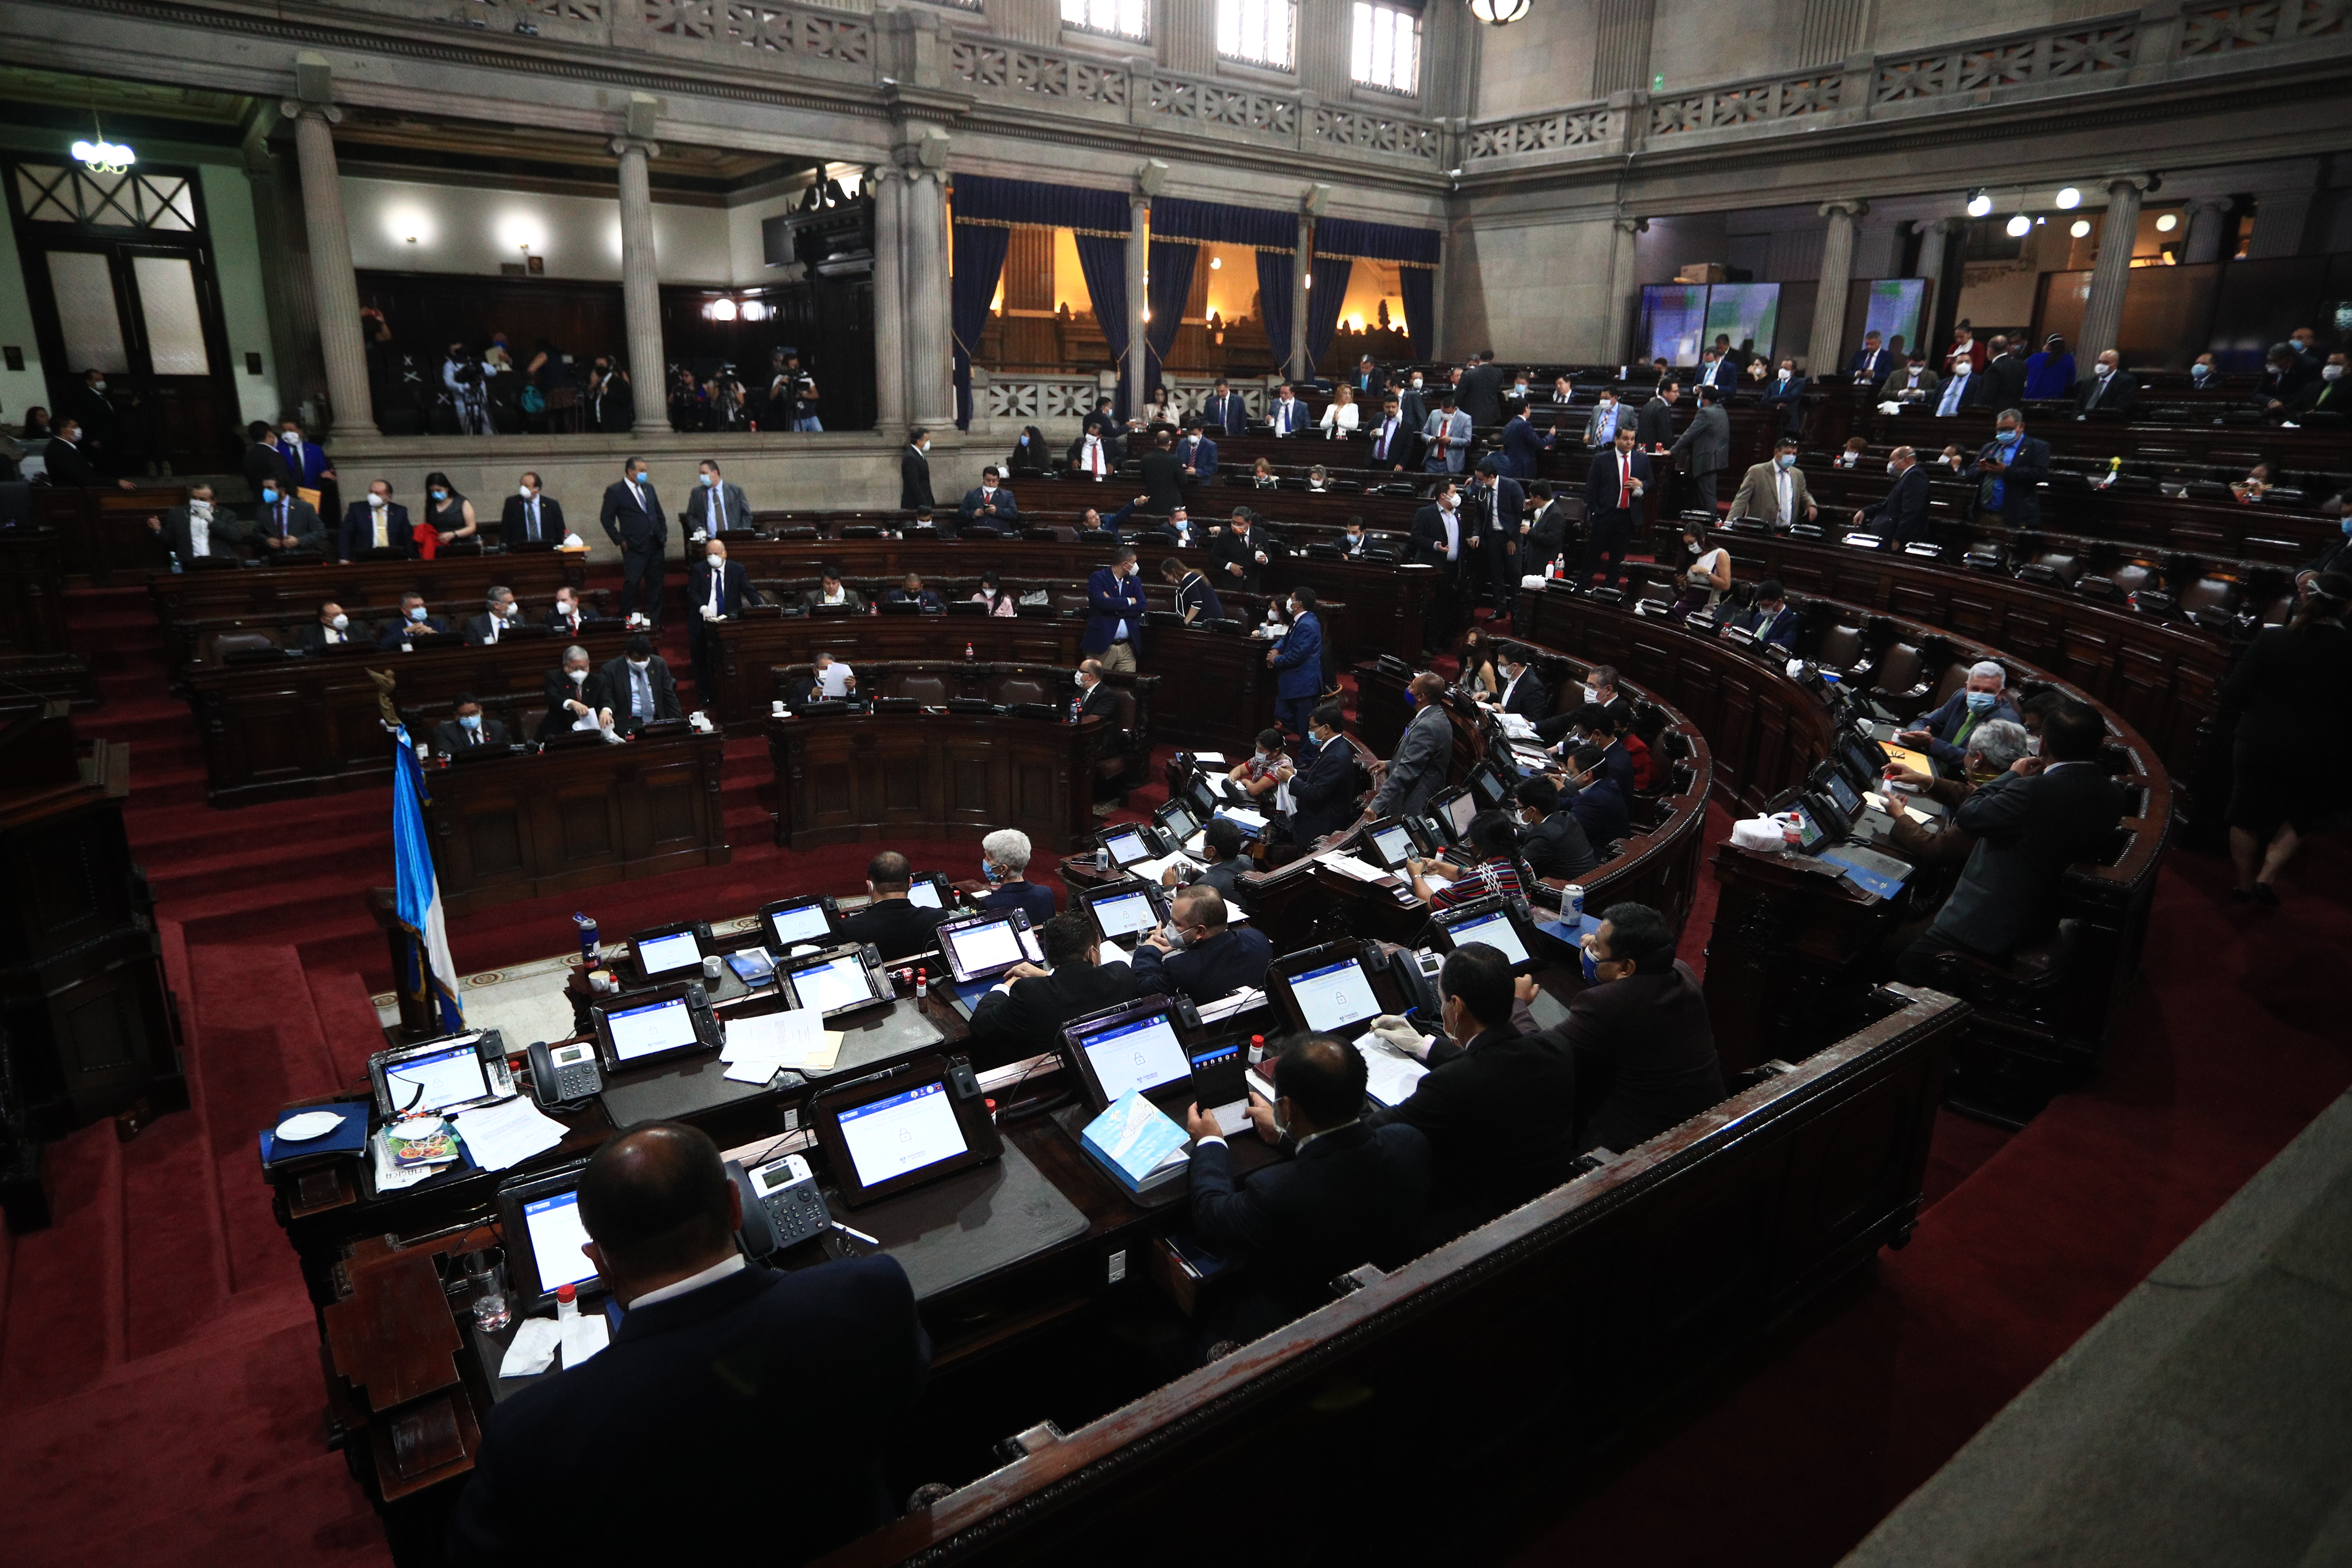 Los diputados podrían reunirse para elegir a magistrados de las cortes. (Foto Prensa Libre: Hemeroteca PL)